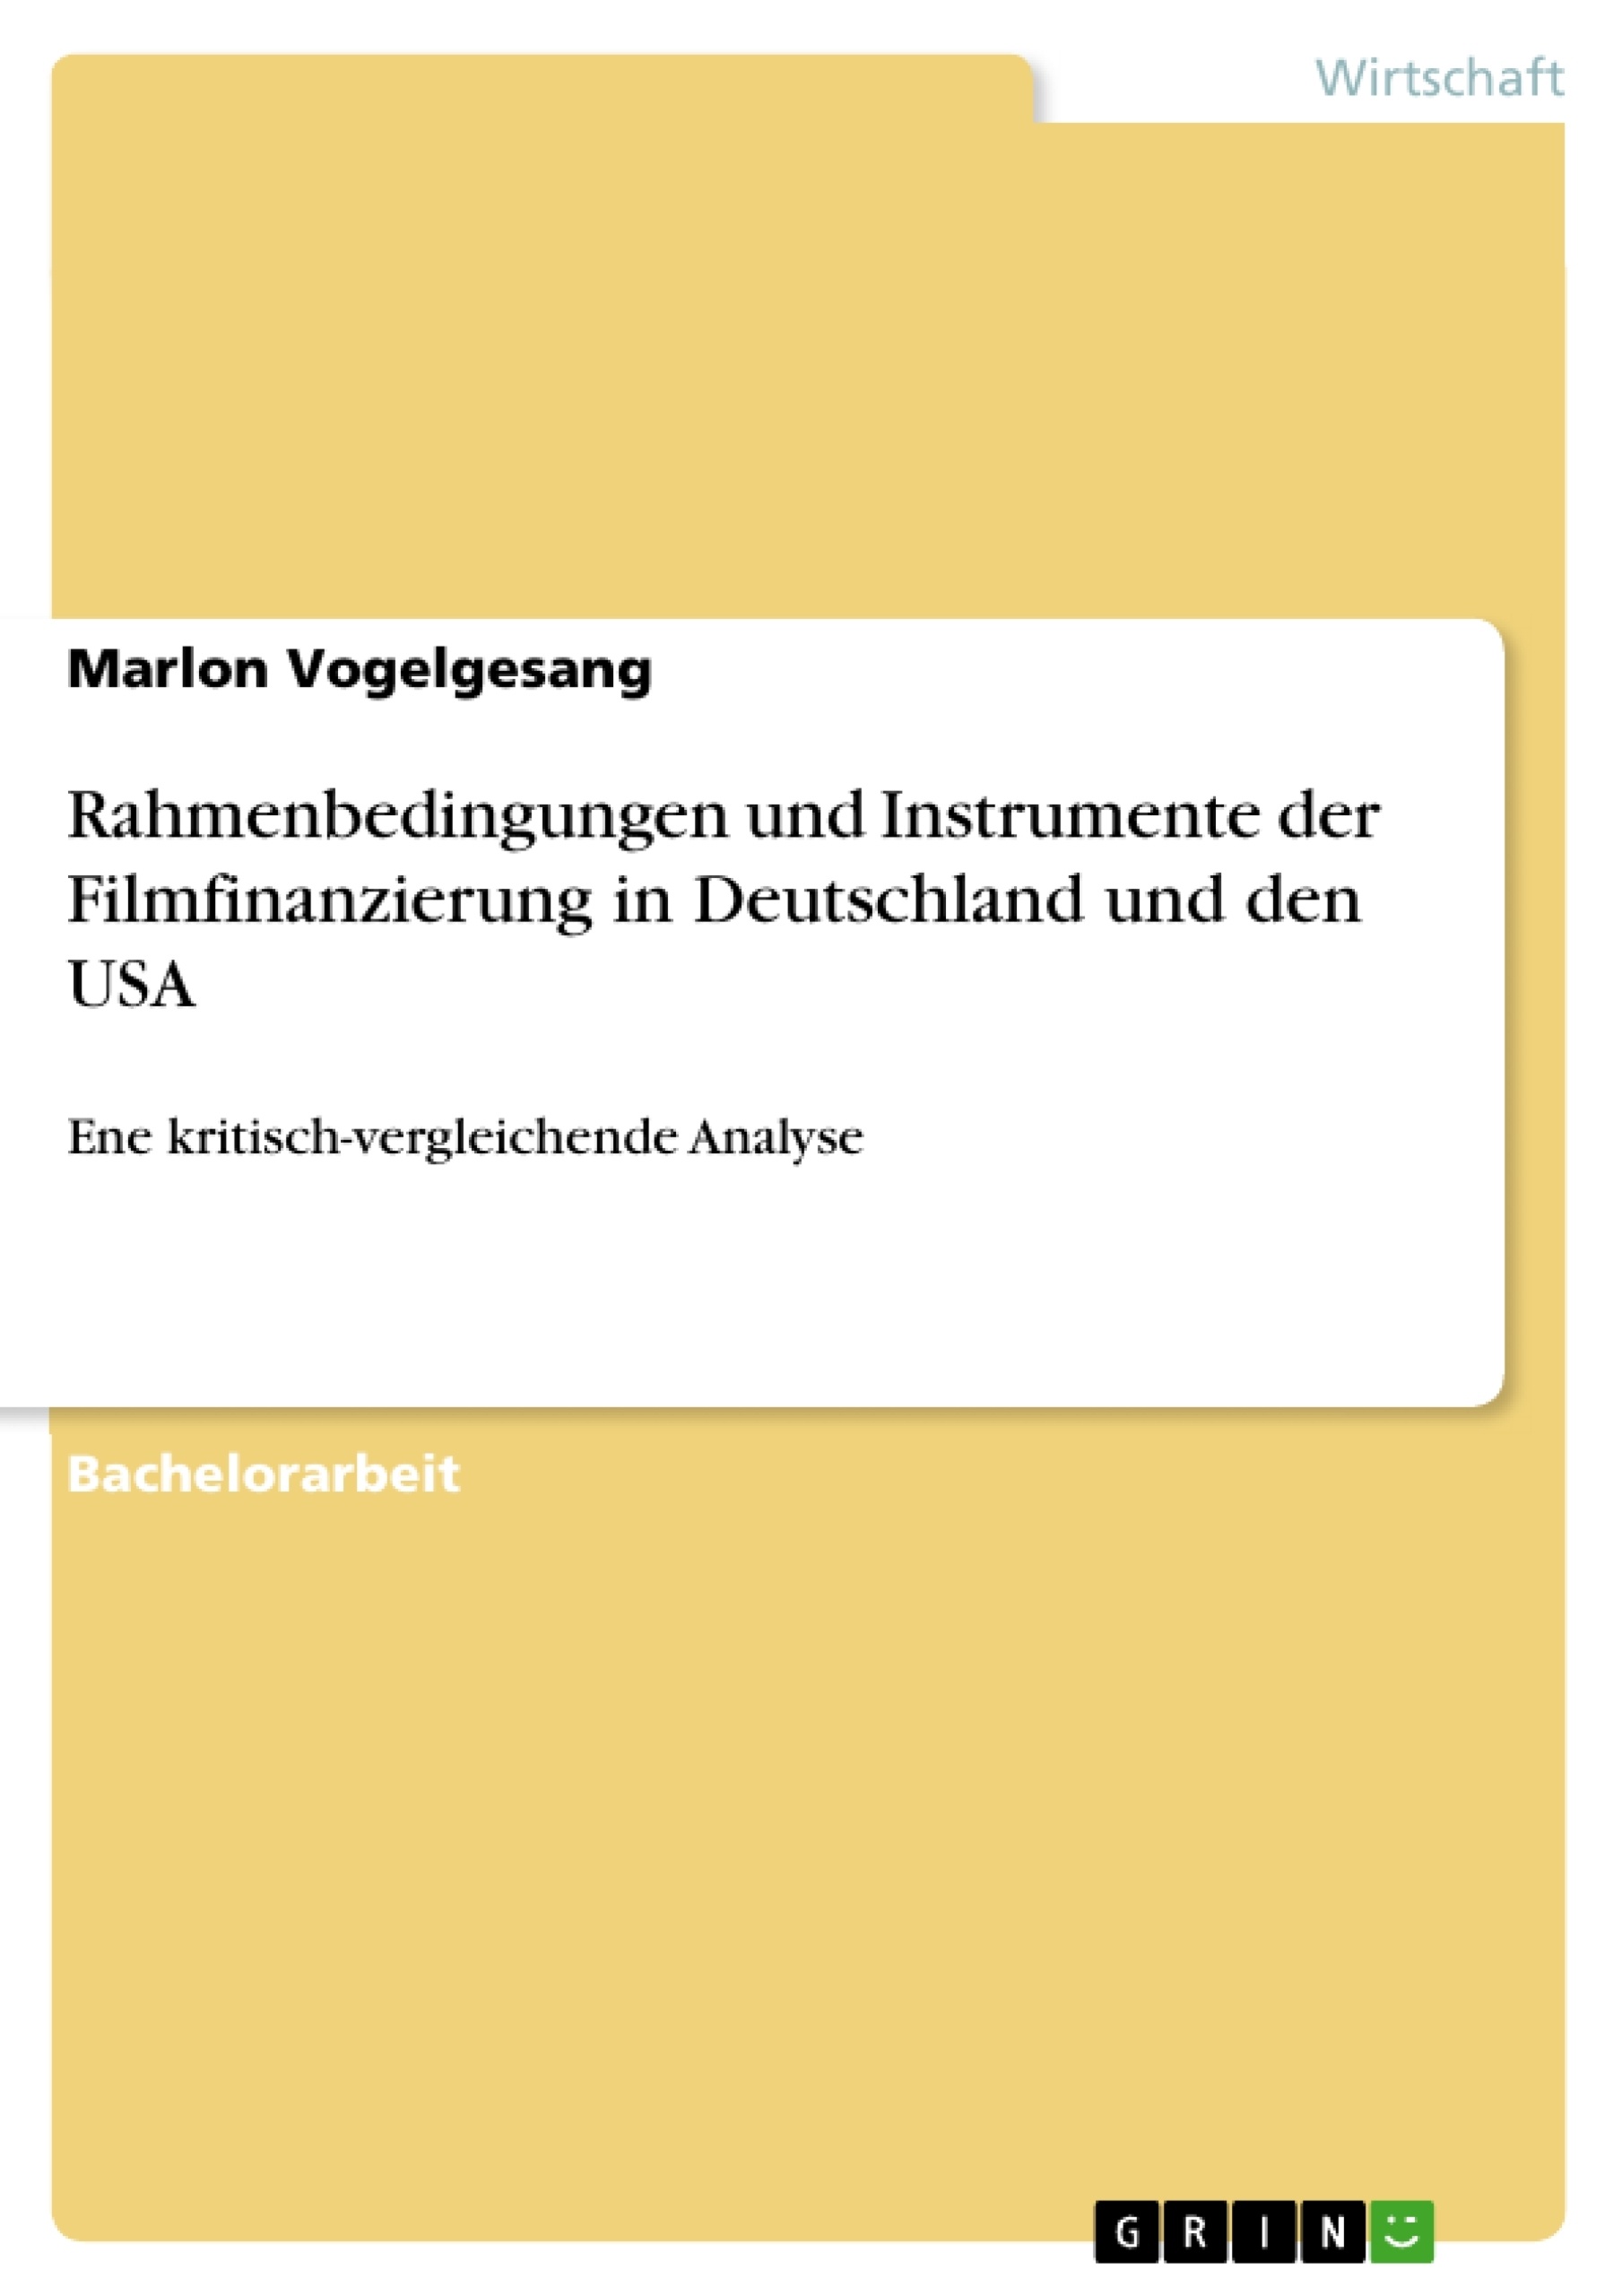 Titre: Rahmenbedingungen und Instrumente der Filmfinanzierung in Deutschland und den USA